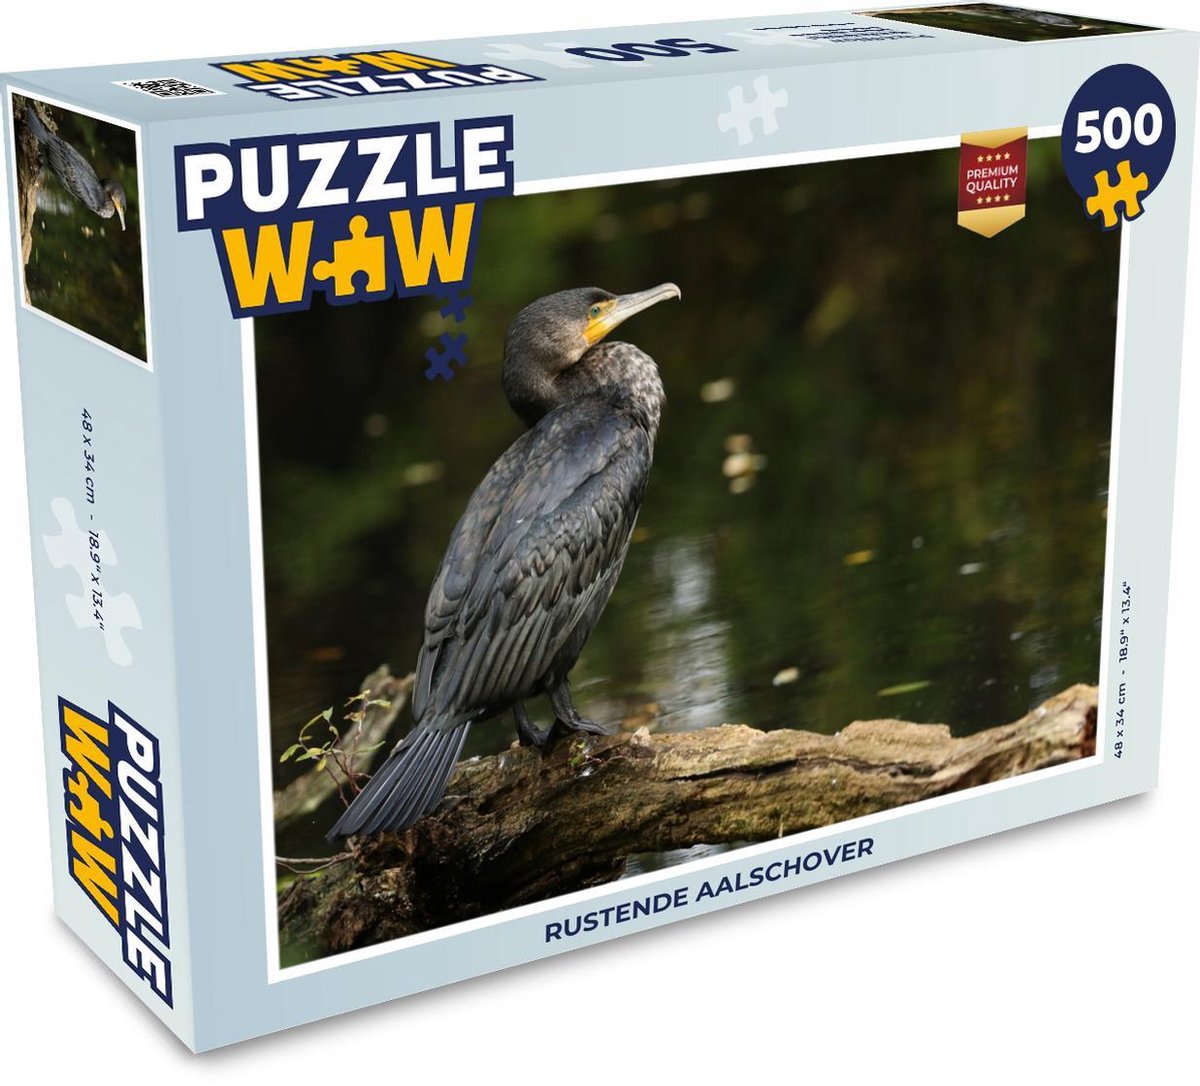 Afbeelding van product Puzzel 500 stukjes Aalscholver - Rustende aalschover - PuzzleWow heeft +100000 puzzels